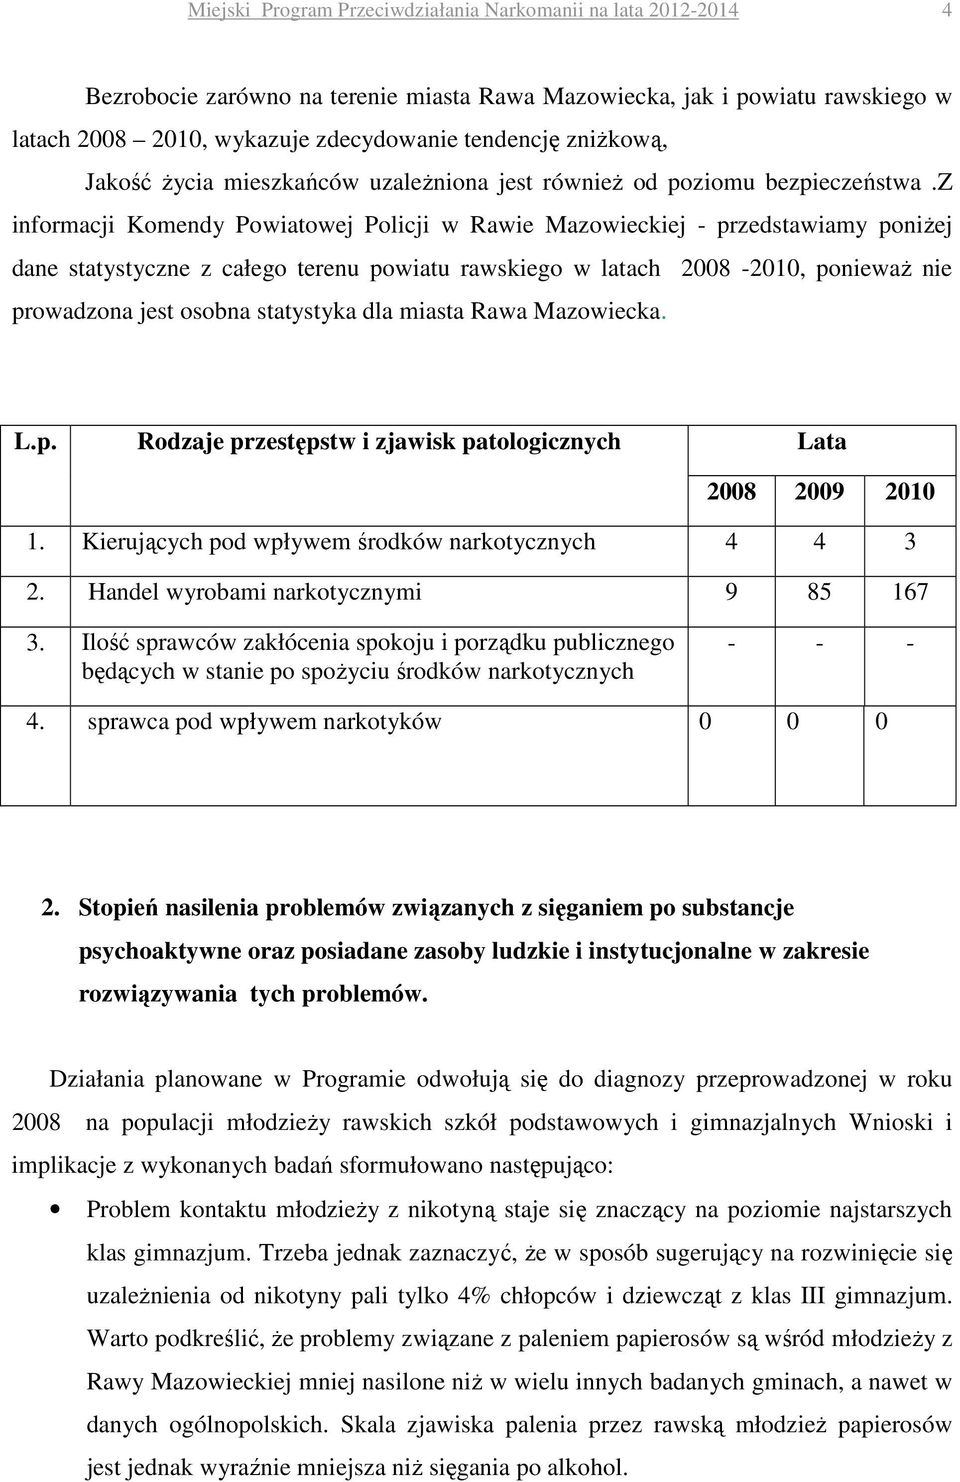 z informacji Komendy Powiatowej Policji w Rawie Mazowieckiej - przedstawiamy poniżej dane statystyczne z całego terenu powiatu rawskiego w latach 2008-2010, ponieważ nie prowadzona jest osobna